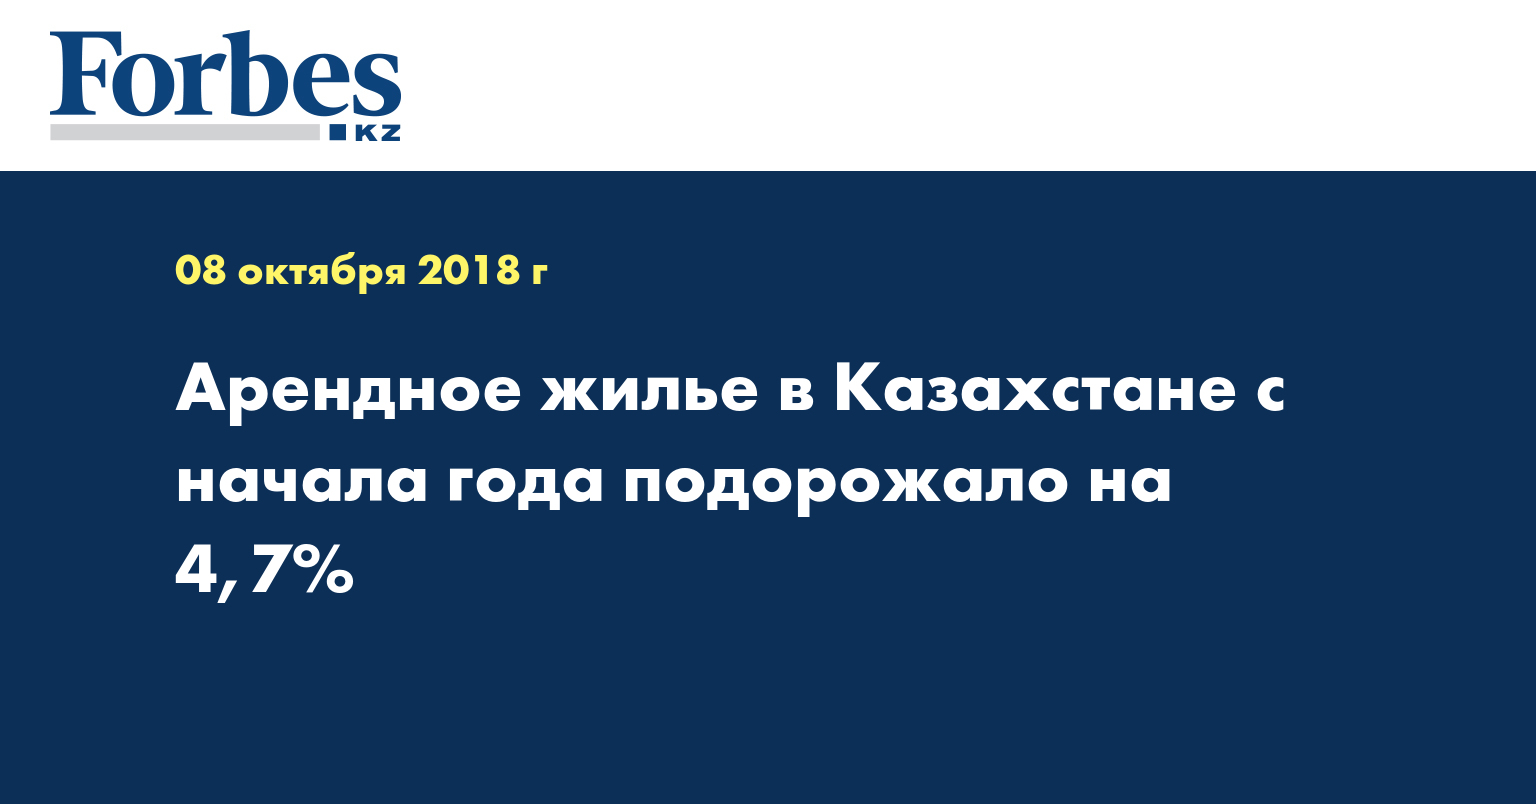  Арендное жилье в Казахстане с начала года подорожало на 4,7%